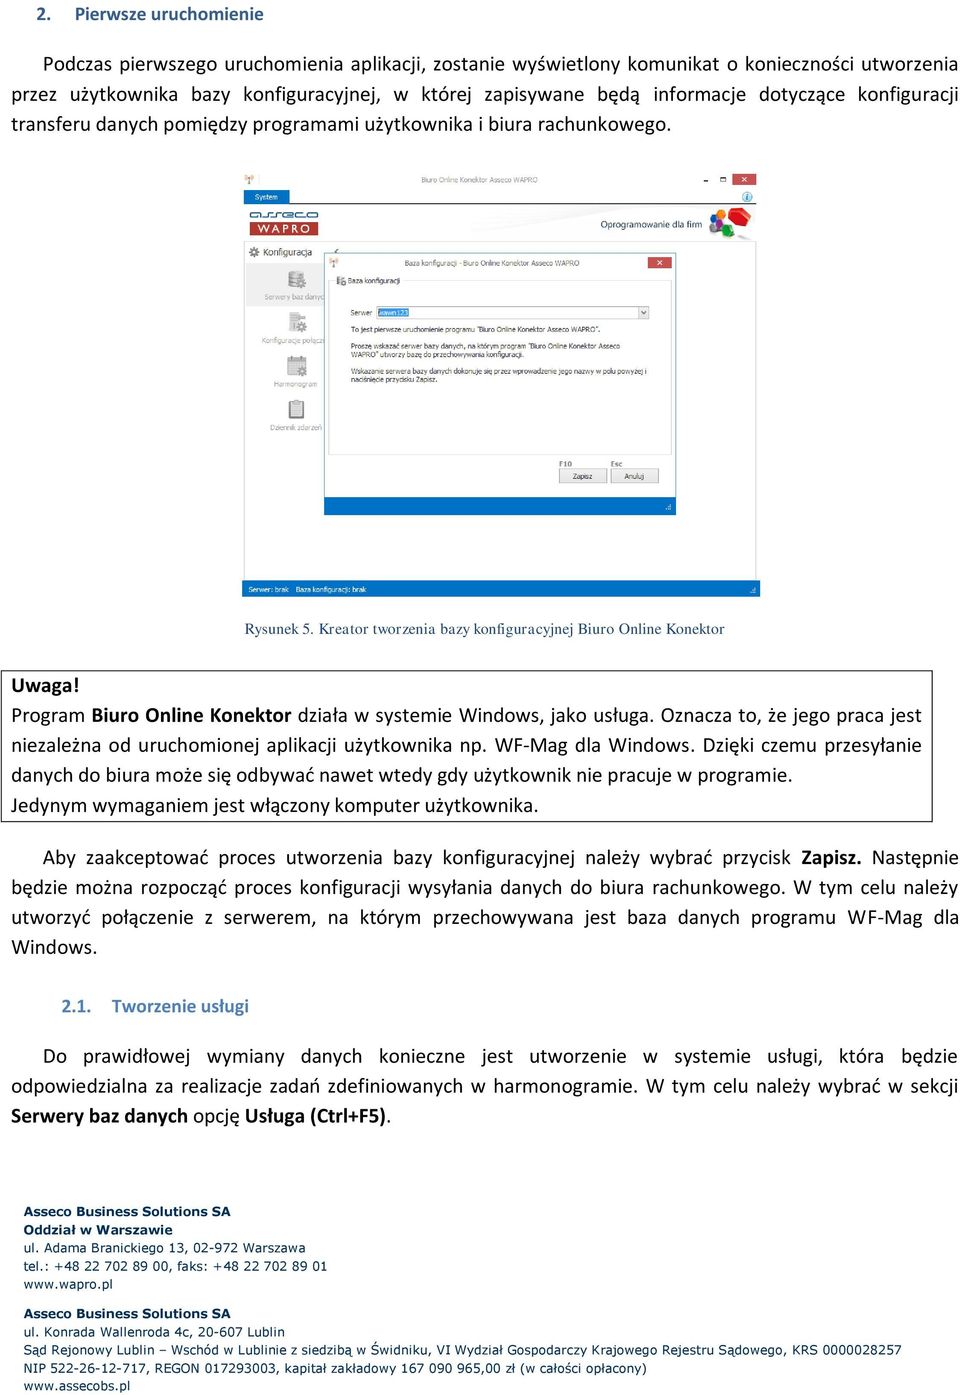 Program Biuro Online Konektor działa w systemie Windows, jako usługa. Oznacza to, że jego praca jest niezależna od uruchomionej aplikacji użytkownika np. WF-Mag dla Windows.